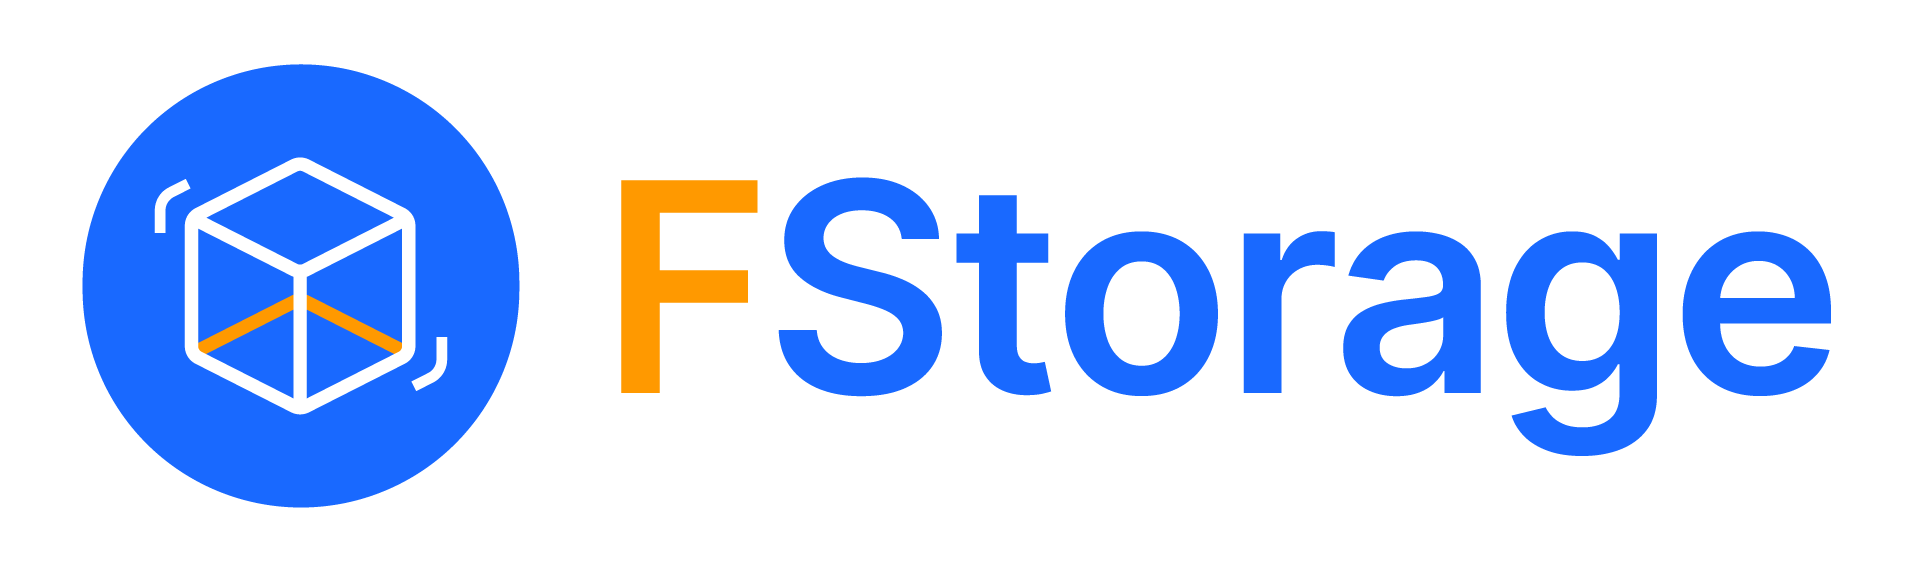 Fstorage - Giải pháp lưu trữ toàn diện dành cho Doanh nghiệp